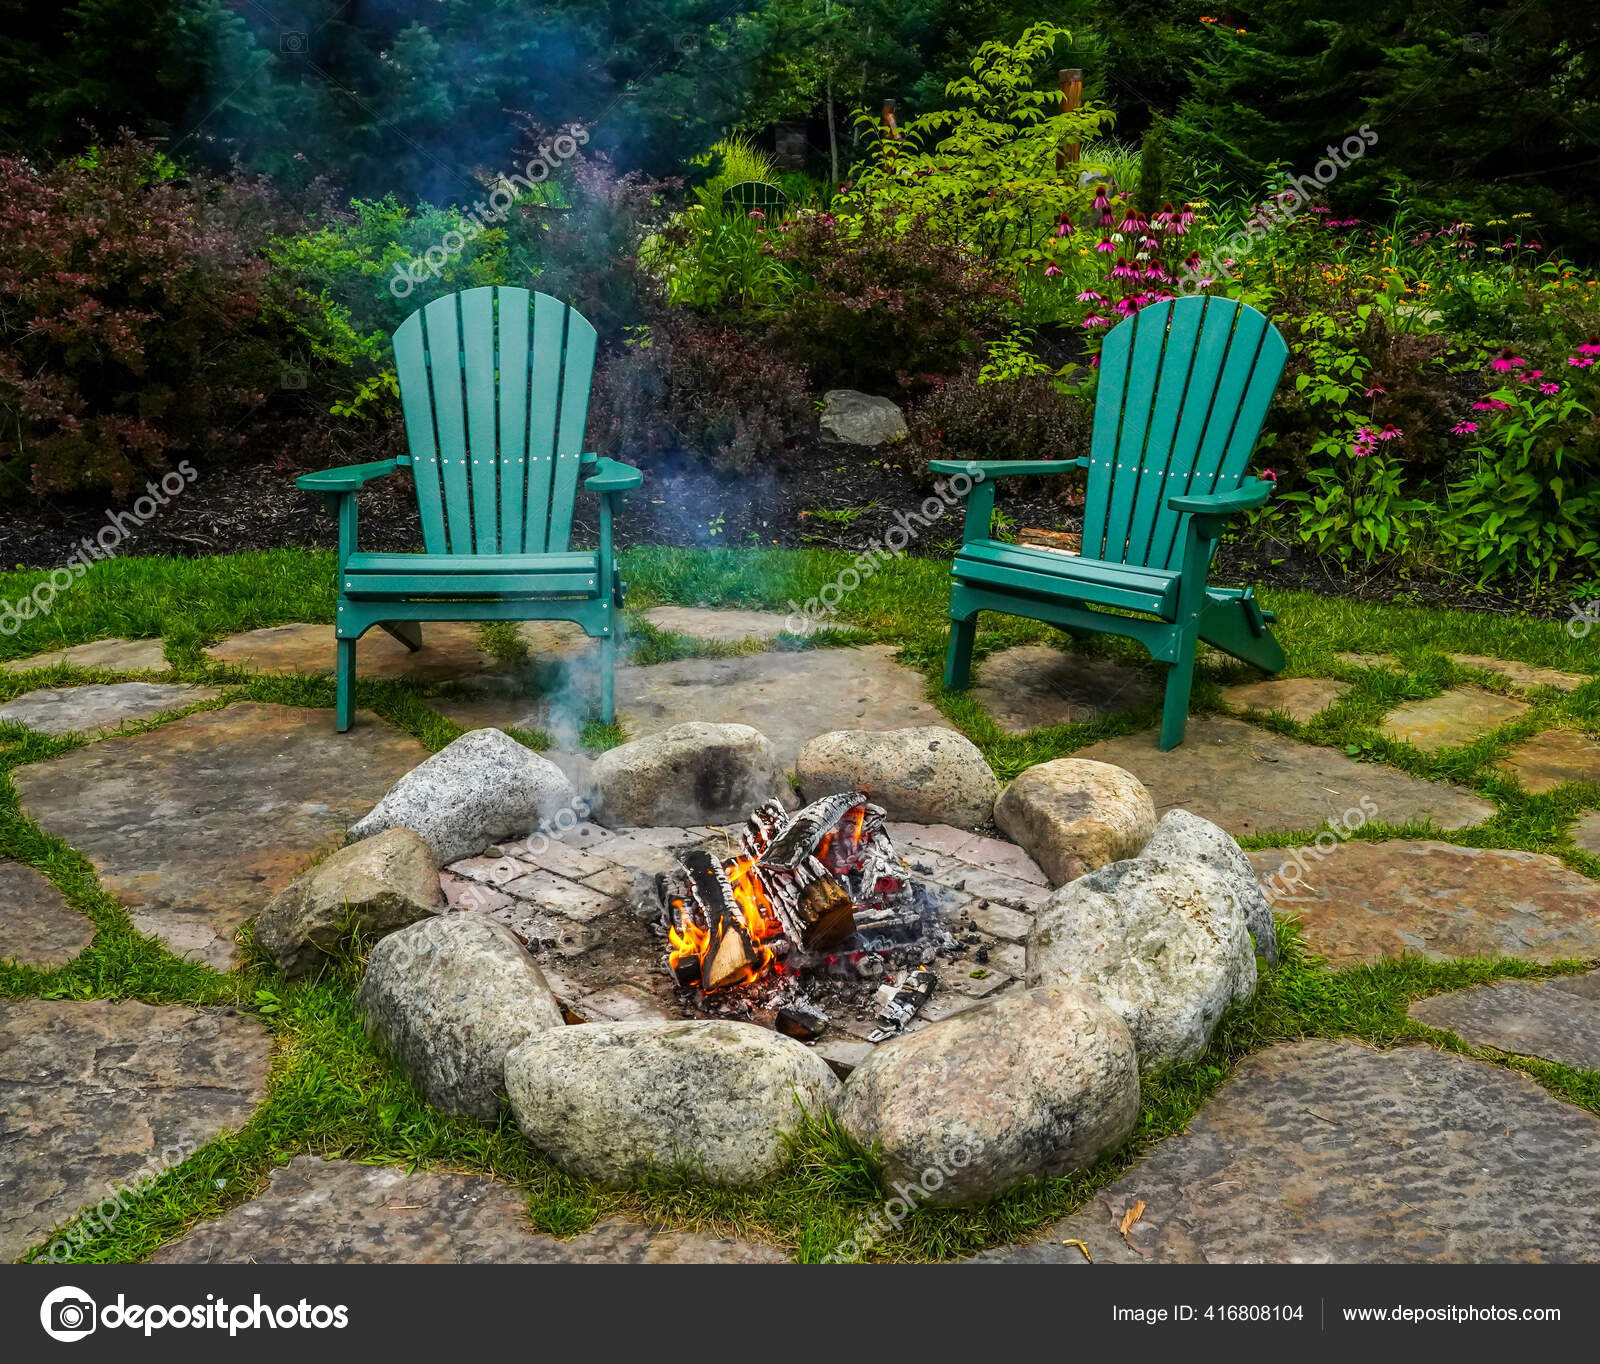 Adirondack Chairs Fire Pit Stock Photo, Adirondack Chairs Around Fire Pit